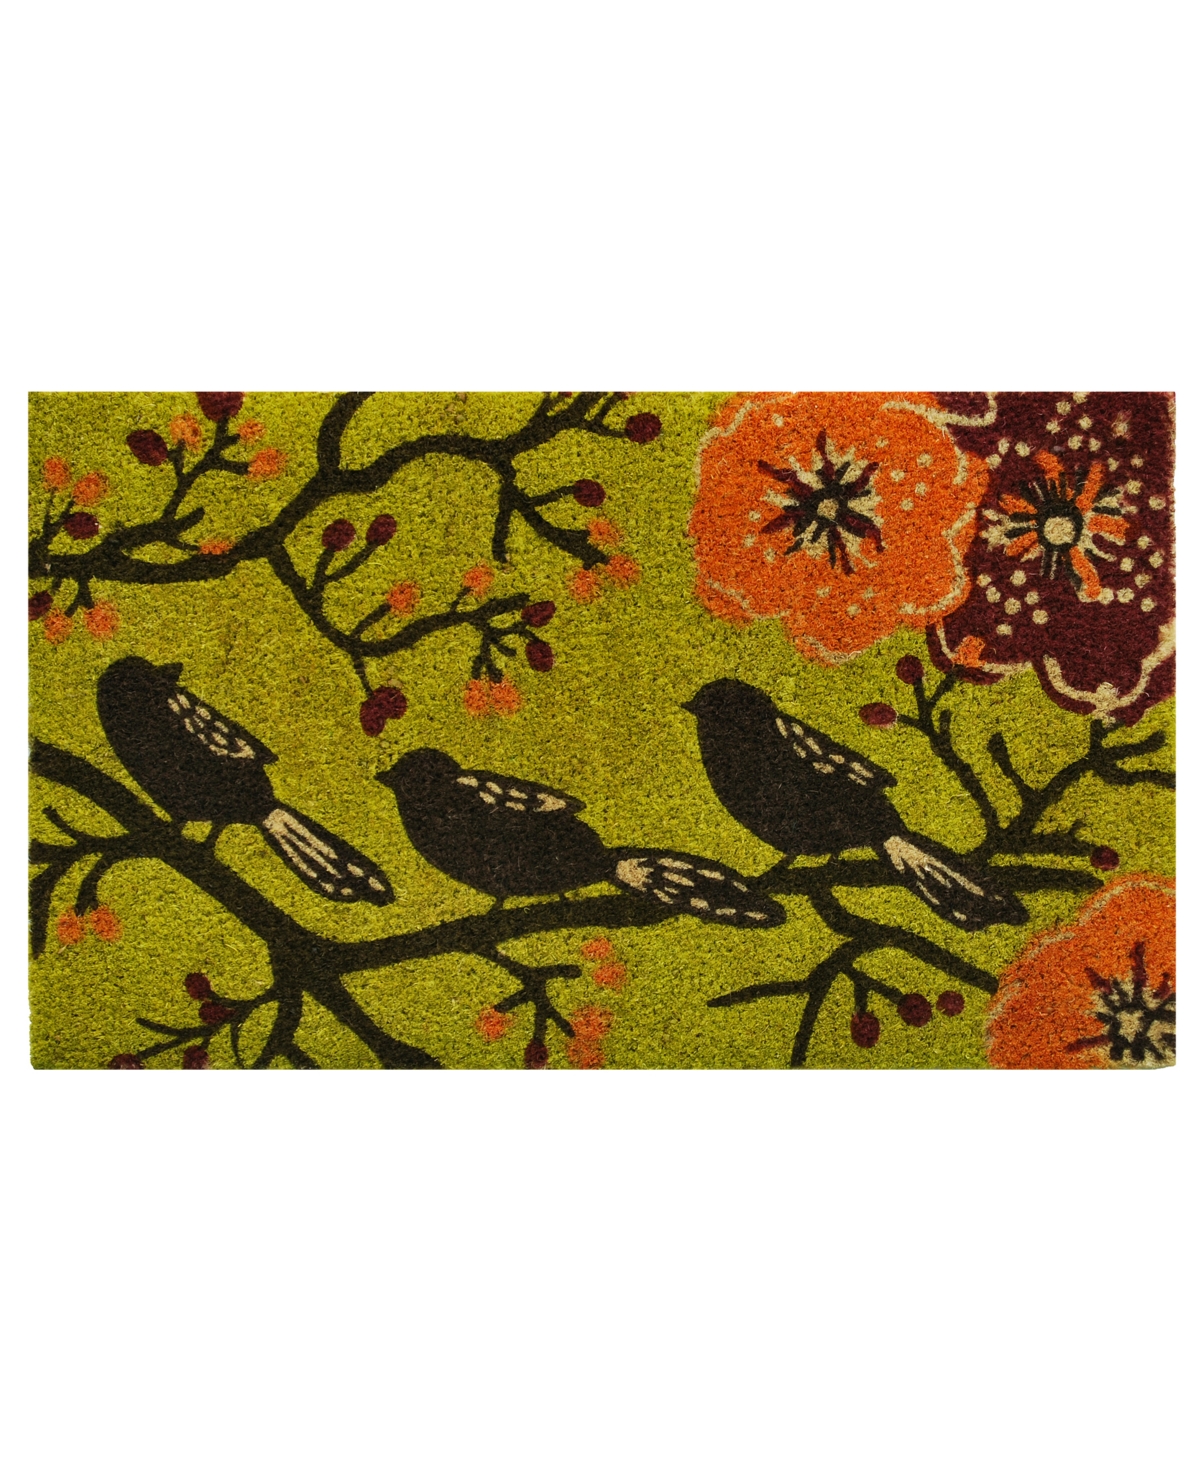 Home & More Birds In A Tree 24" X 36" Coir/vinyl Doormat Bedding In Multi